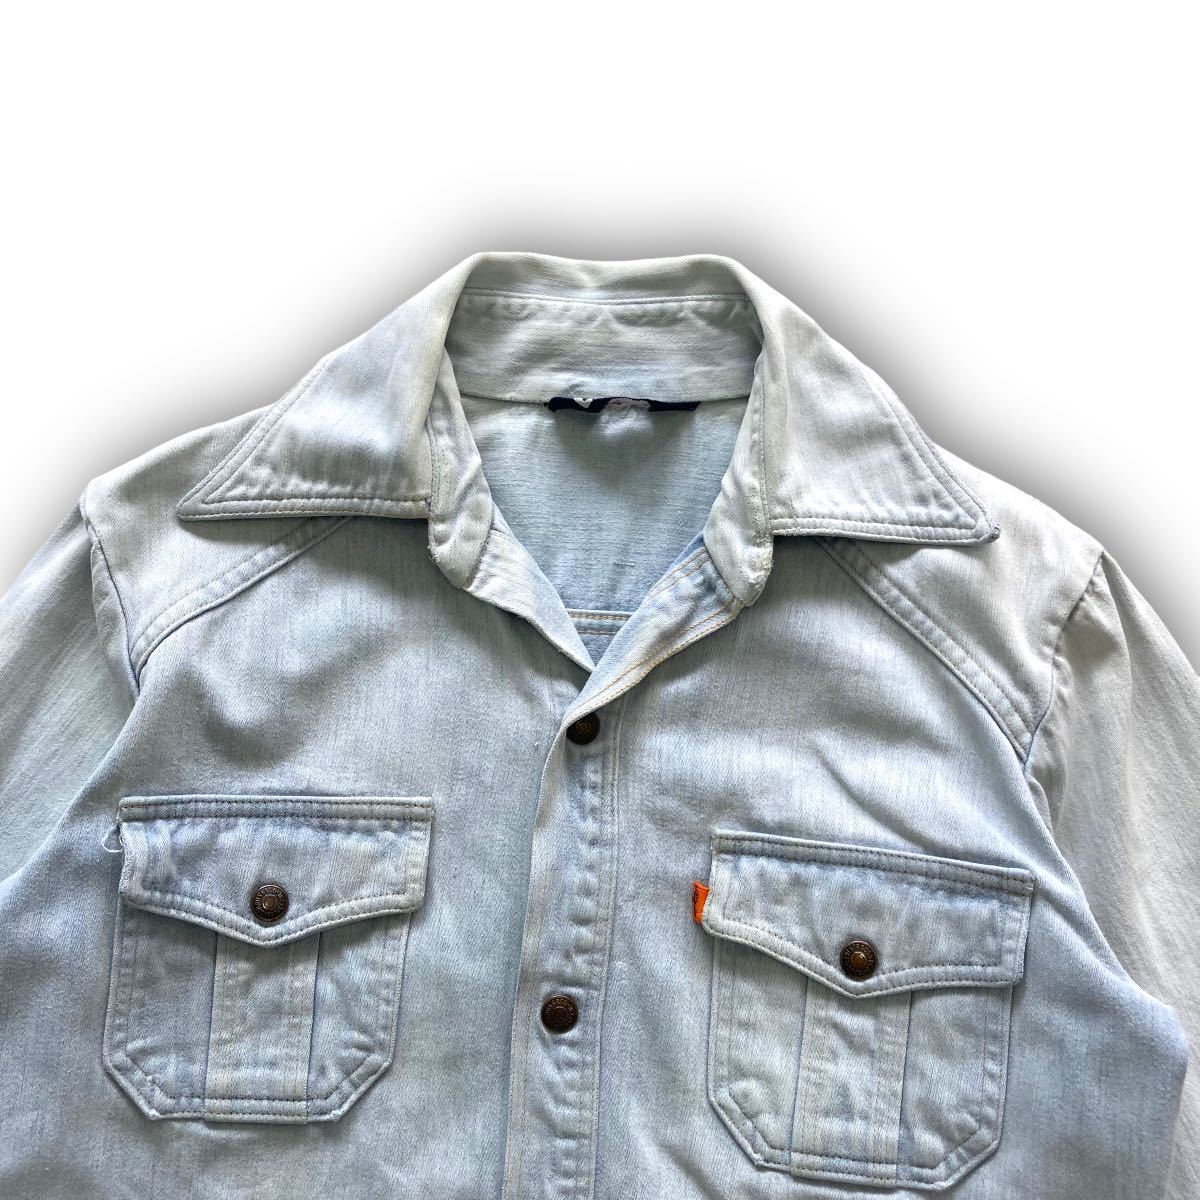 【Levi's】70s リーバイス デニムシャツジャケット ヴィンテージ LEVI'S 70年代 三角タグ 紺色タグ カッパーボタン オレンジタブ 古着